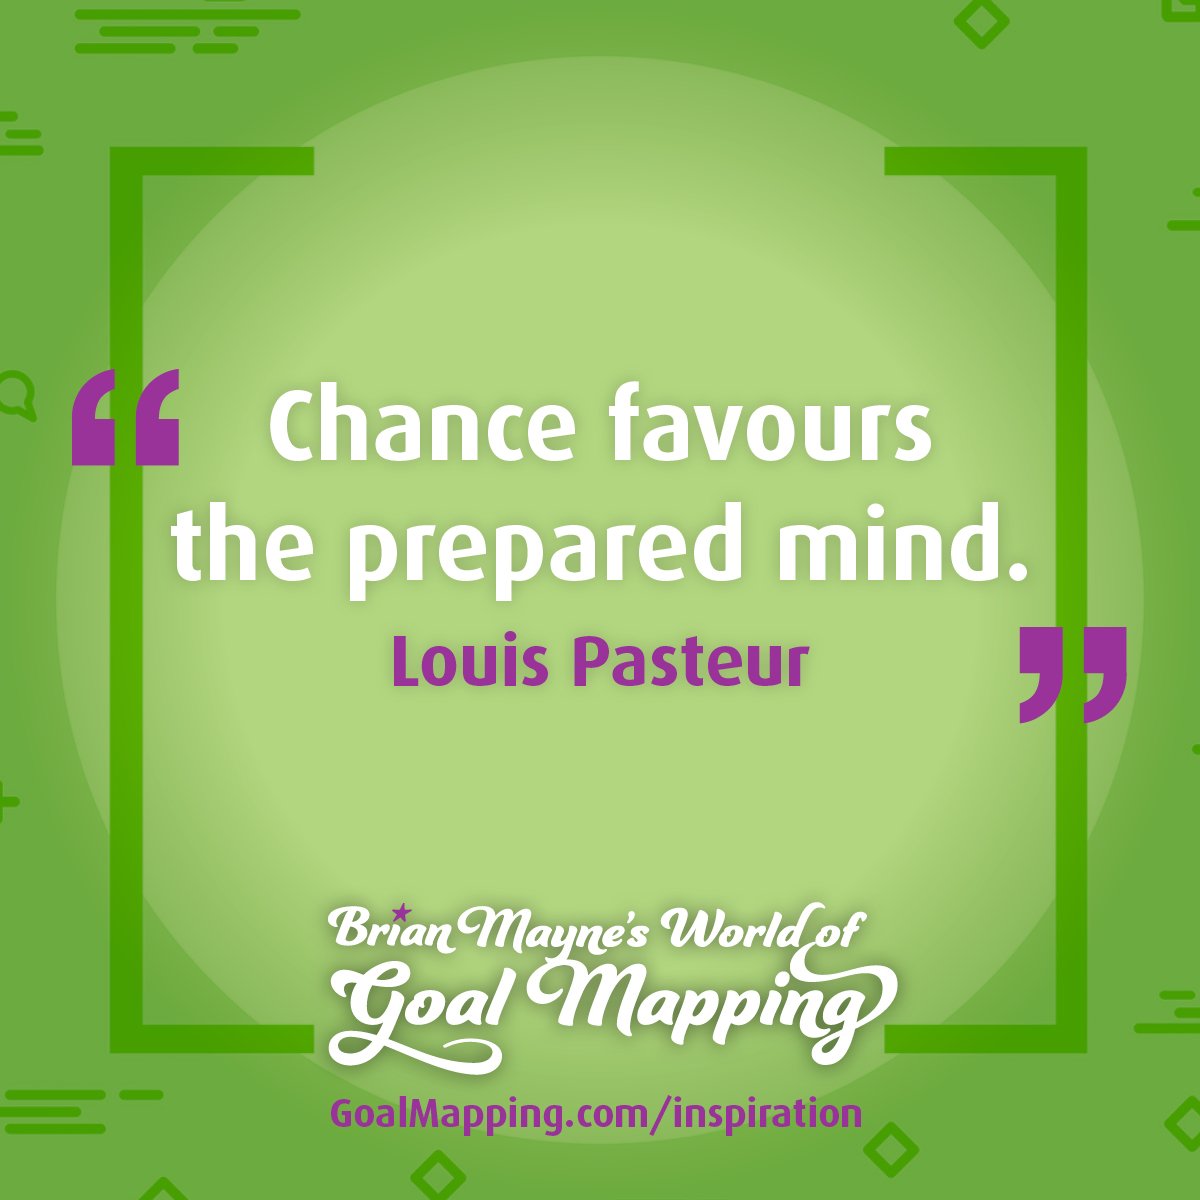 "Chance favours the prepared mind." Louis Pasteur